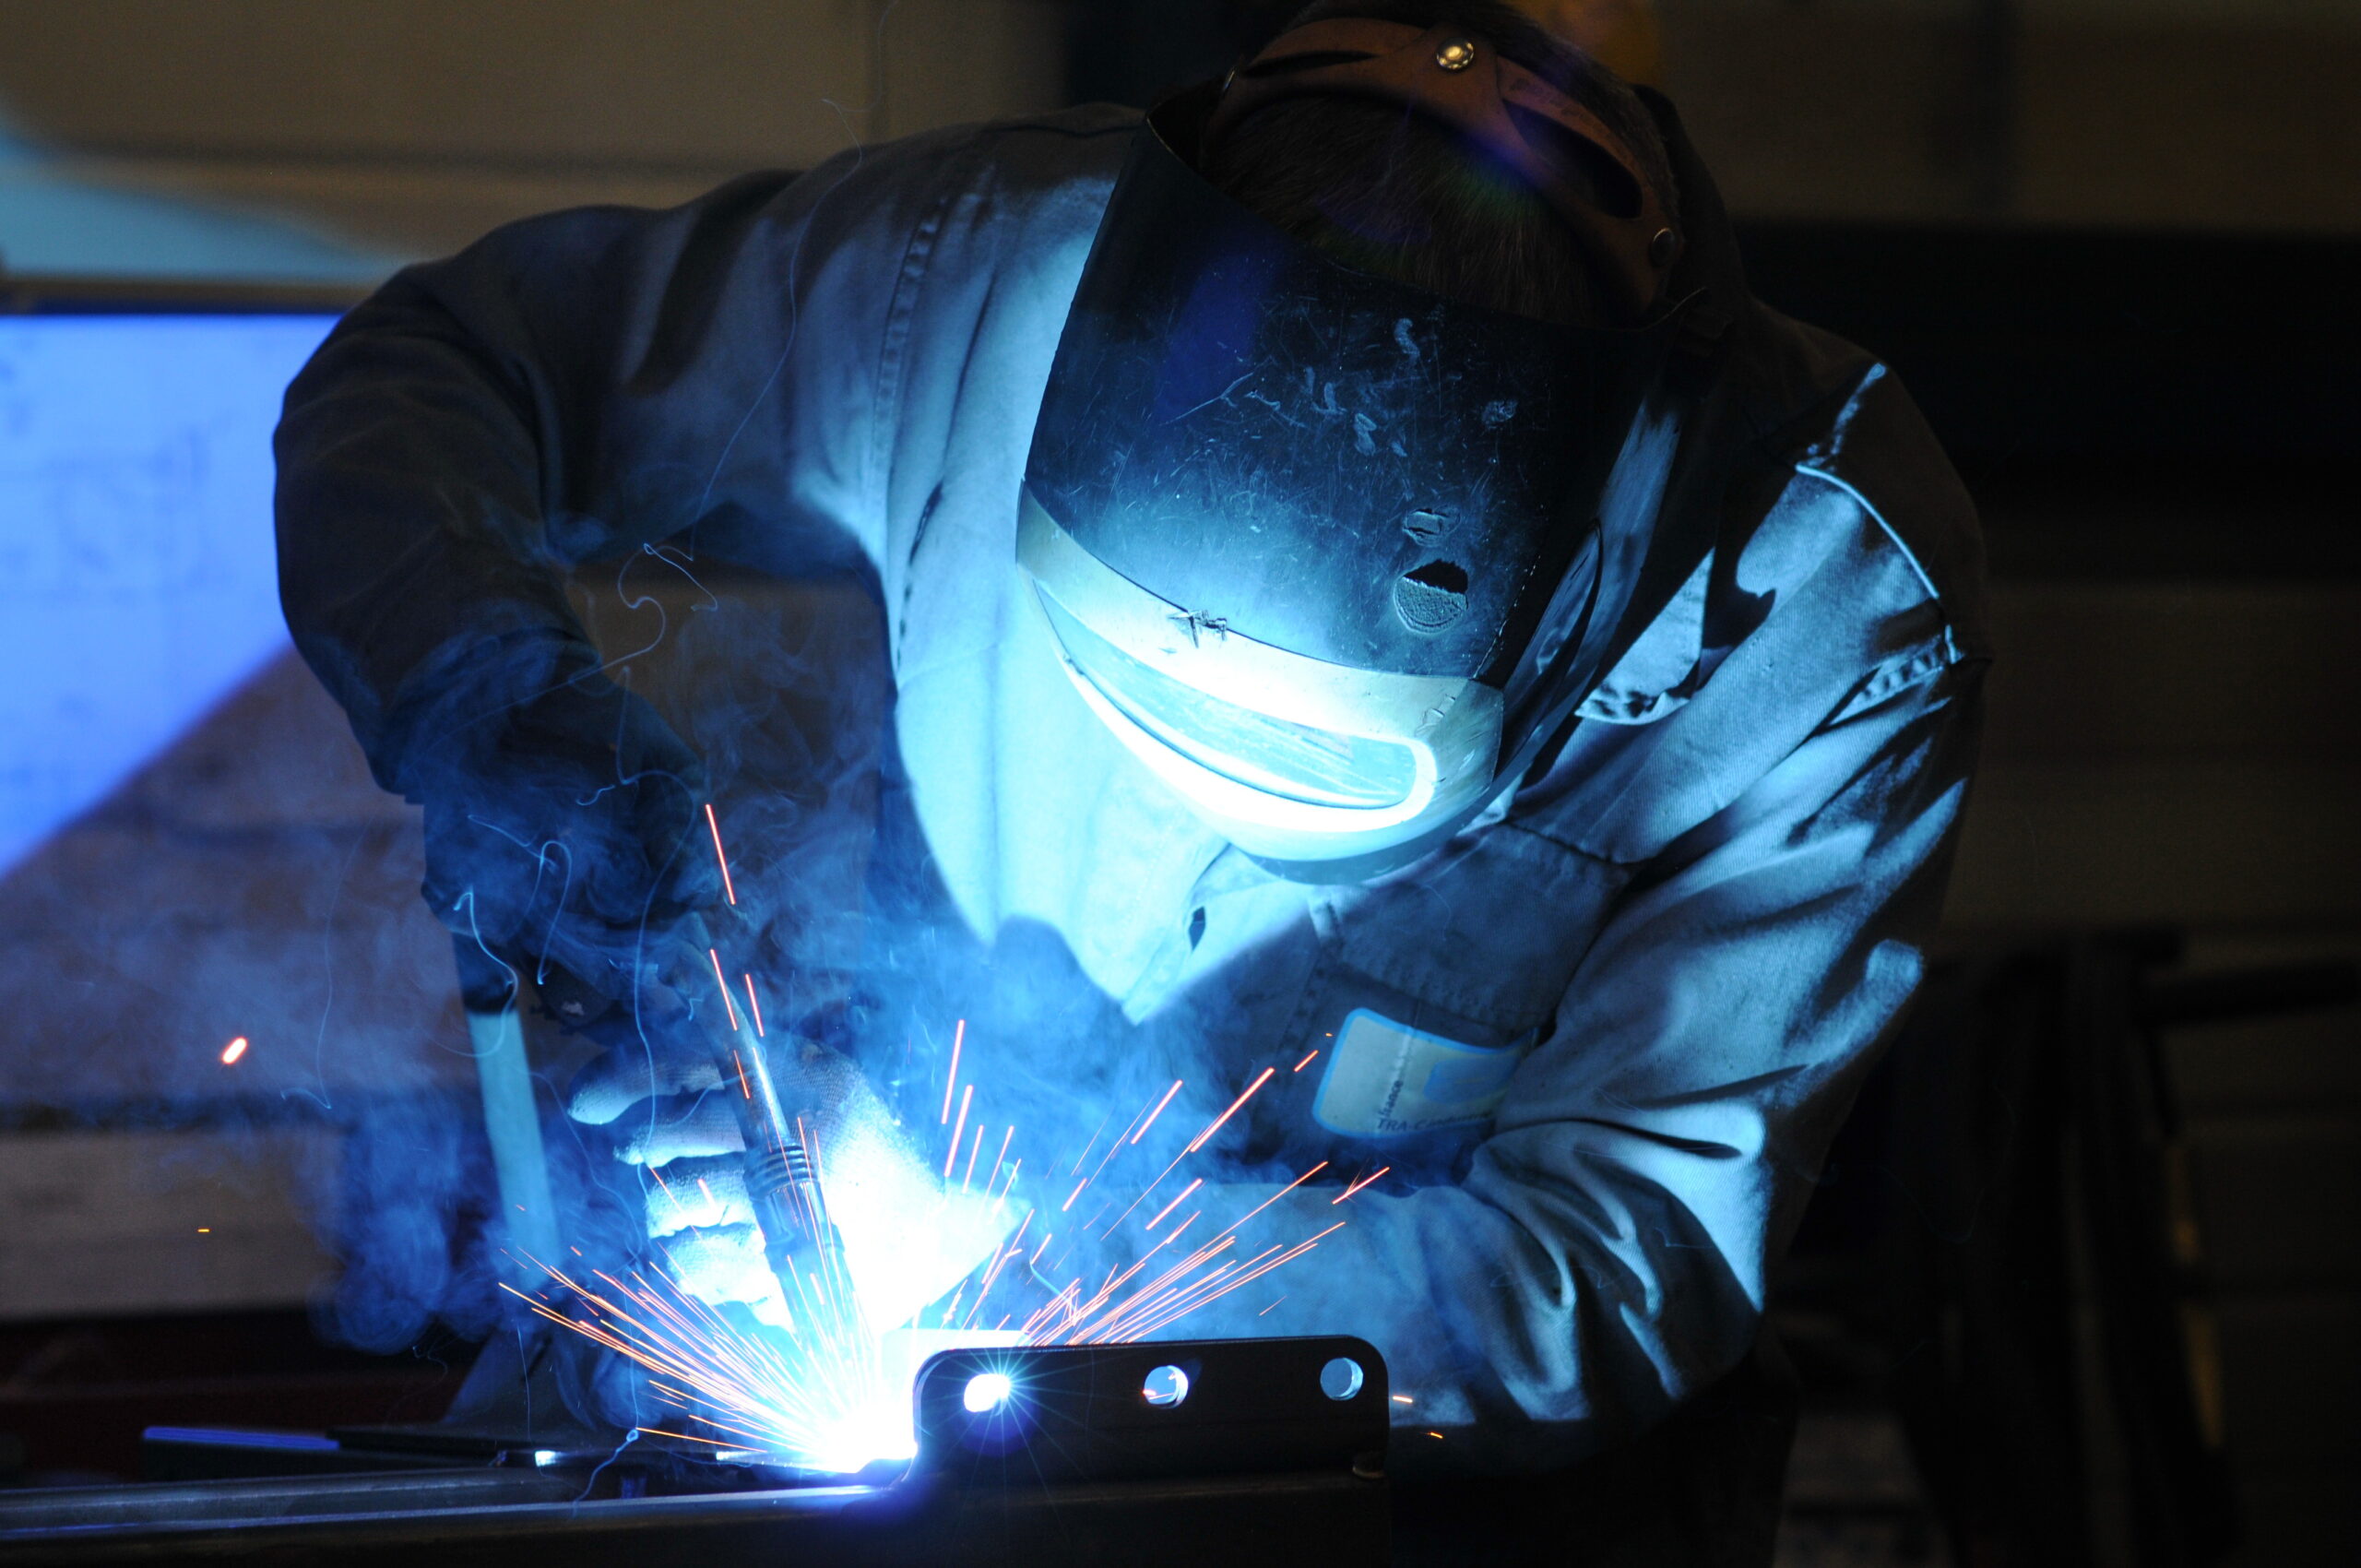 Aluminium welding, the necessary expertise